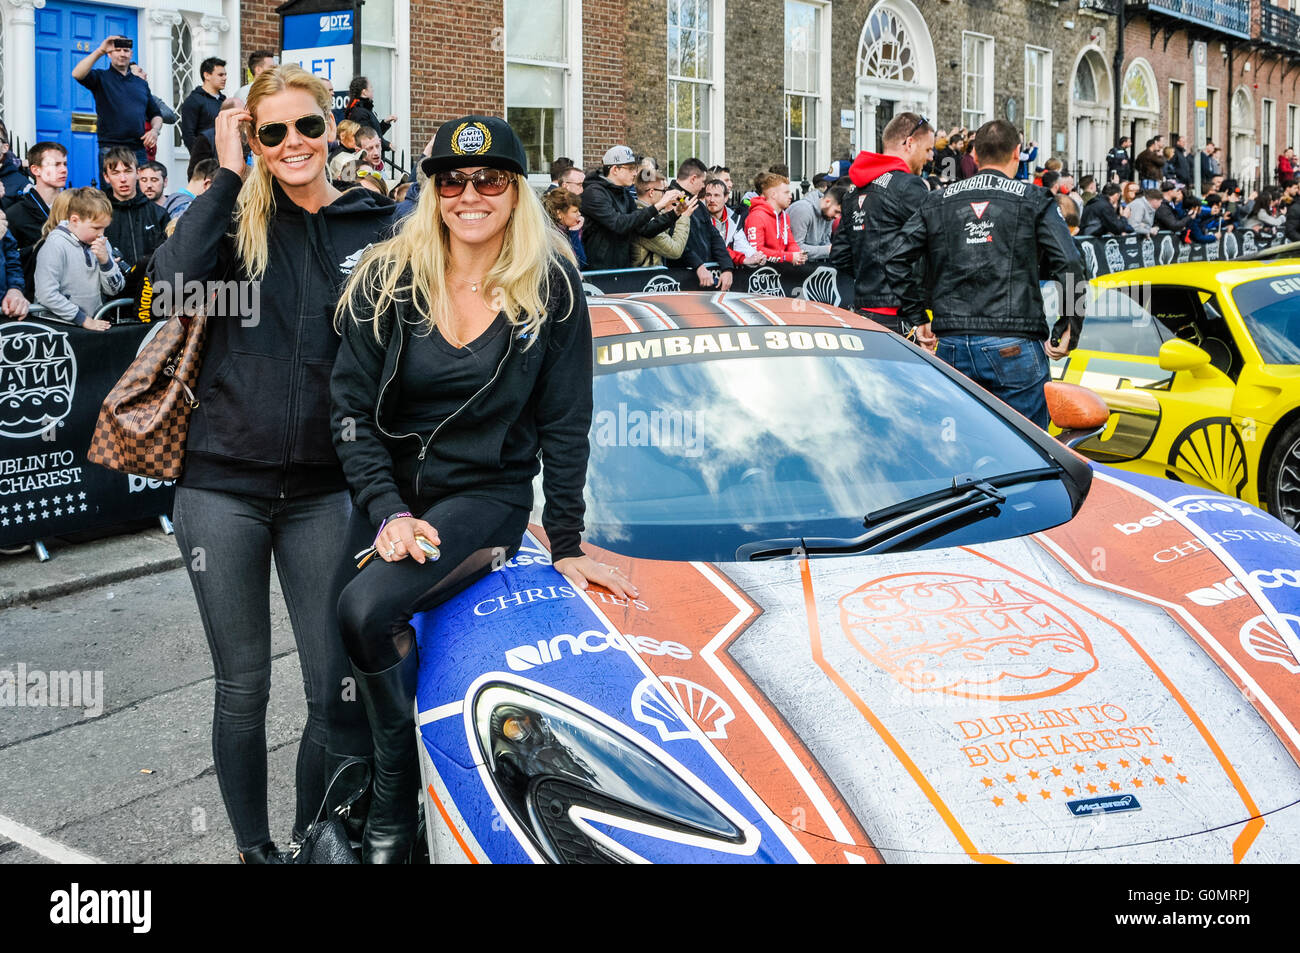 DUBLIN, IRLAND. MAI 01 2016 - zwei weibliche Teilnehmer stehen neben ihrer Maclaren 650S Spider, während der Gumball 3000 in Dublin auf einer 6-tägigen Fahrt nach Bukarest beginnt Stockfoto